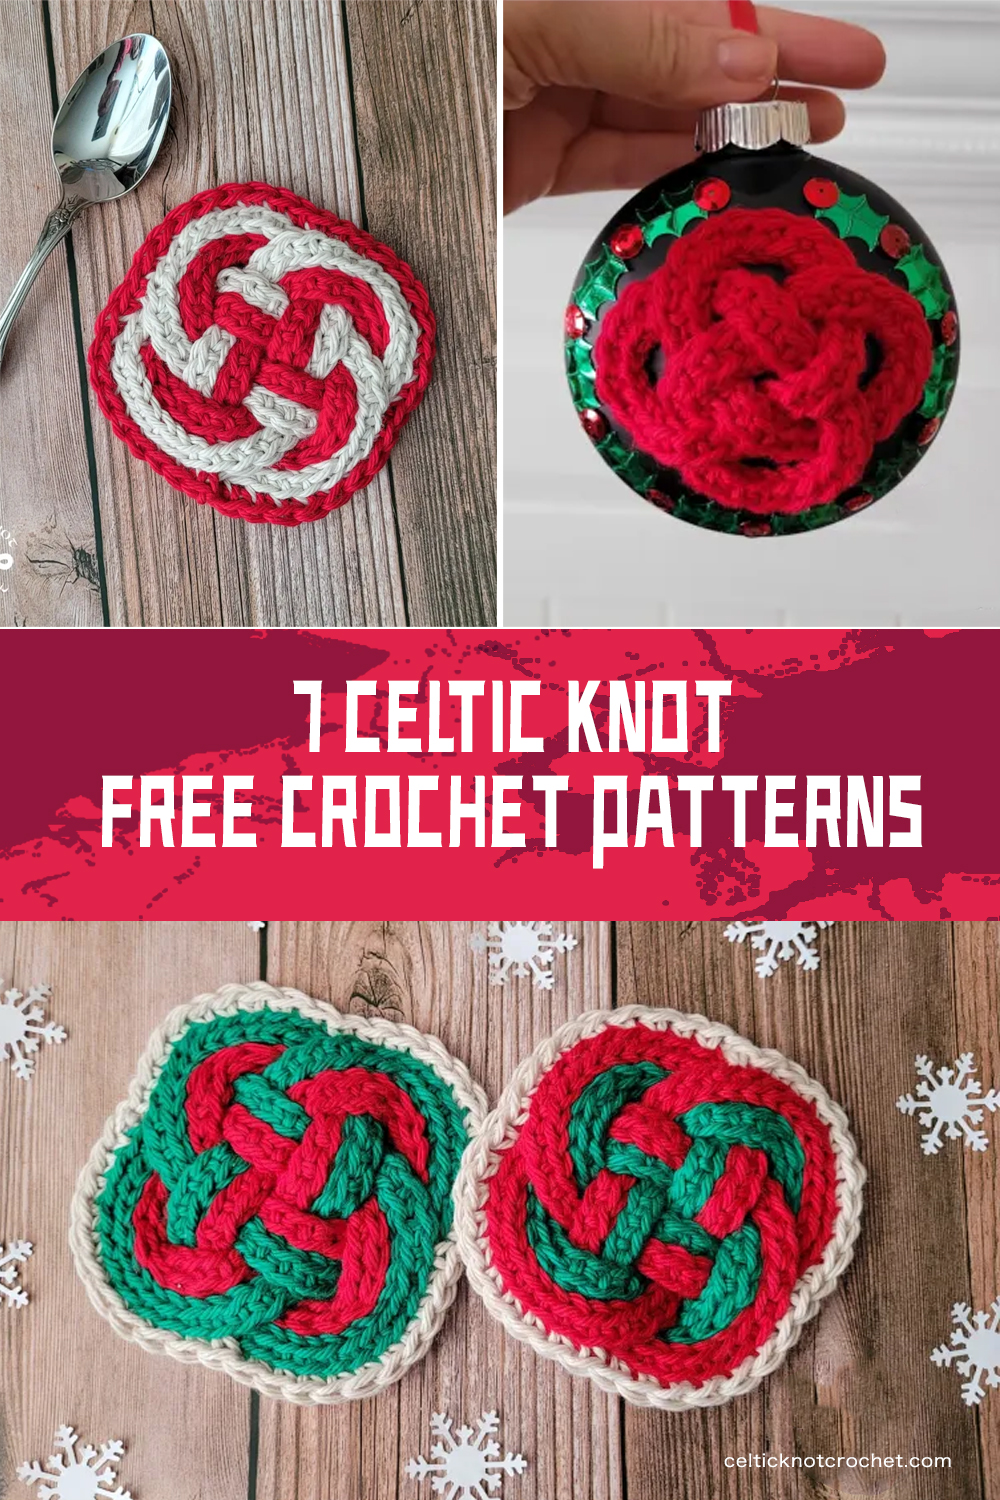 7 Celtic Knot Crochet FREE Patterns